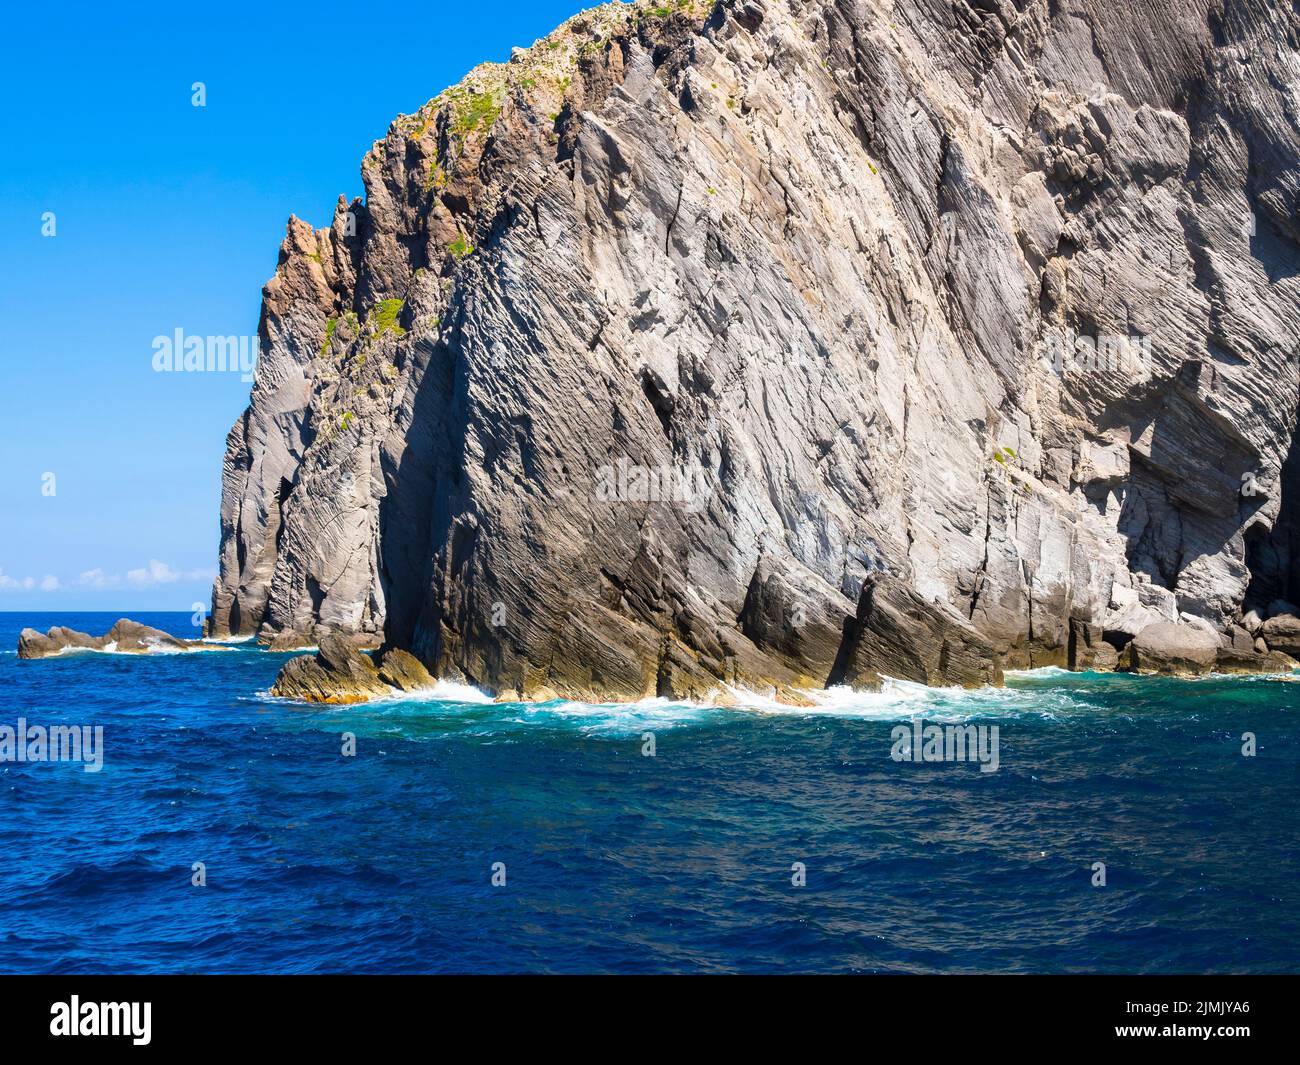 Flesen der Isola Dattilo, vulkanische Insel, Tyrrhenisches Meer, Äolische oder Liparische Inseln, Sizilien, Süditalien, Italien Stock Photo